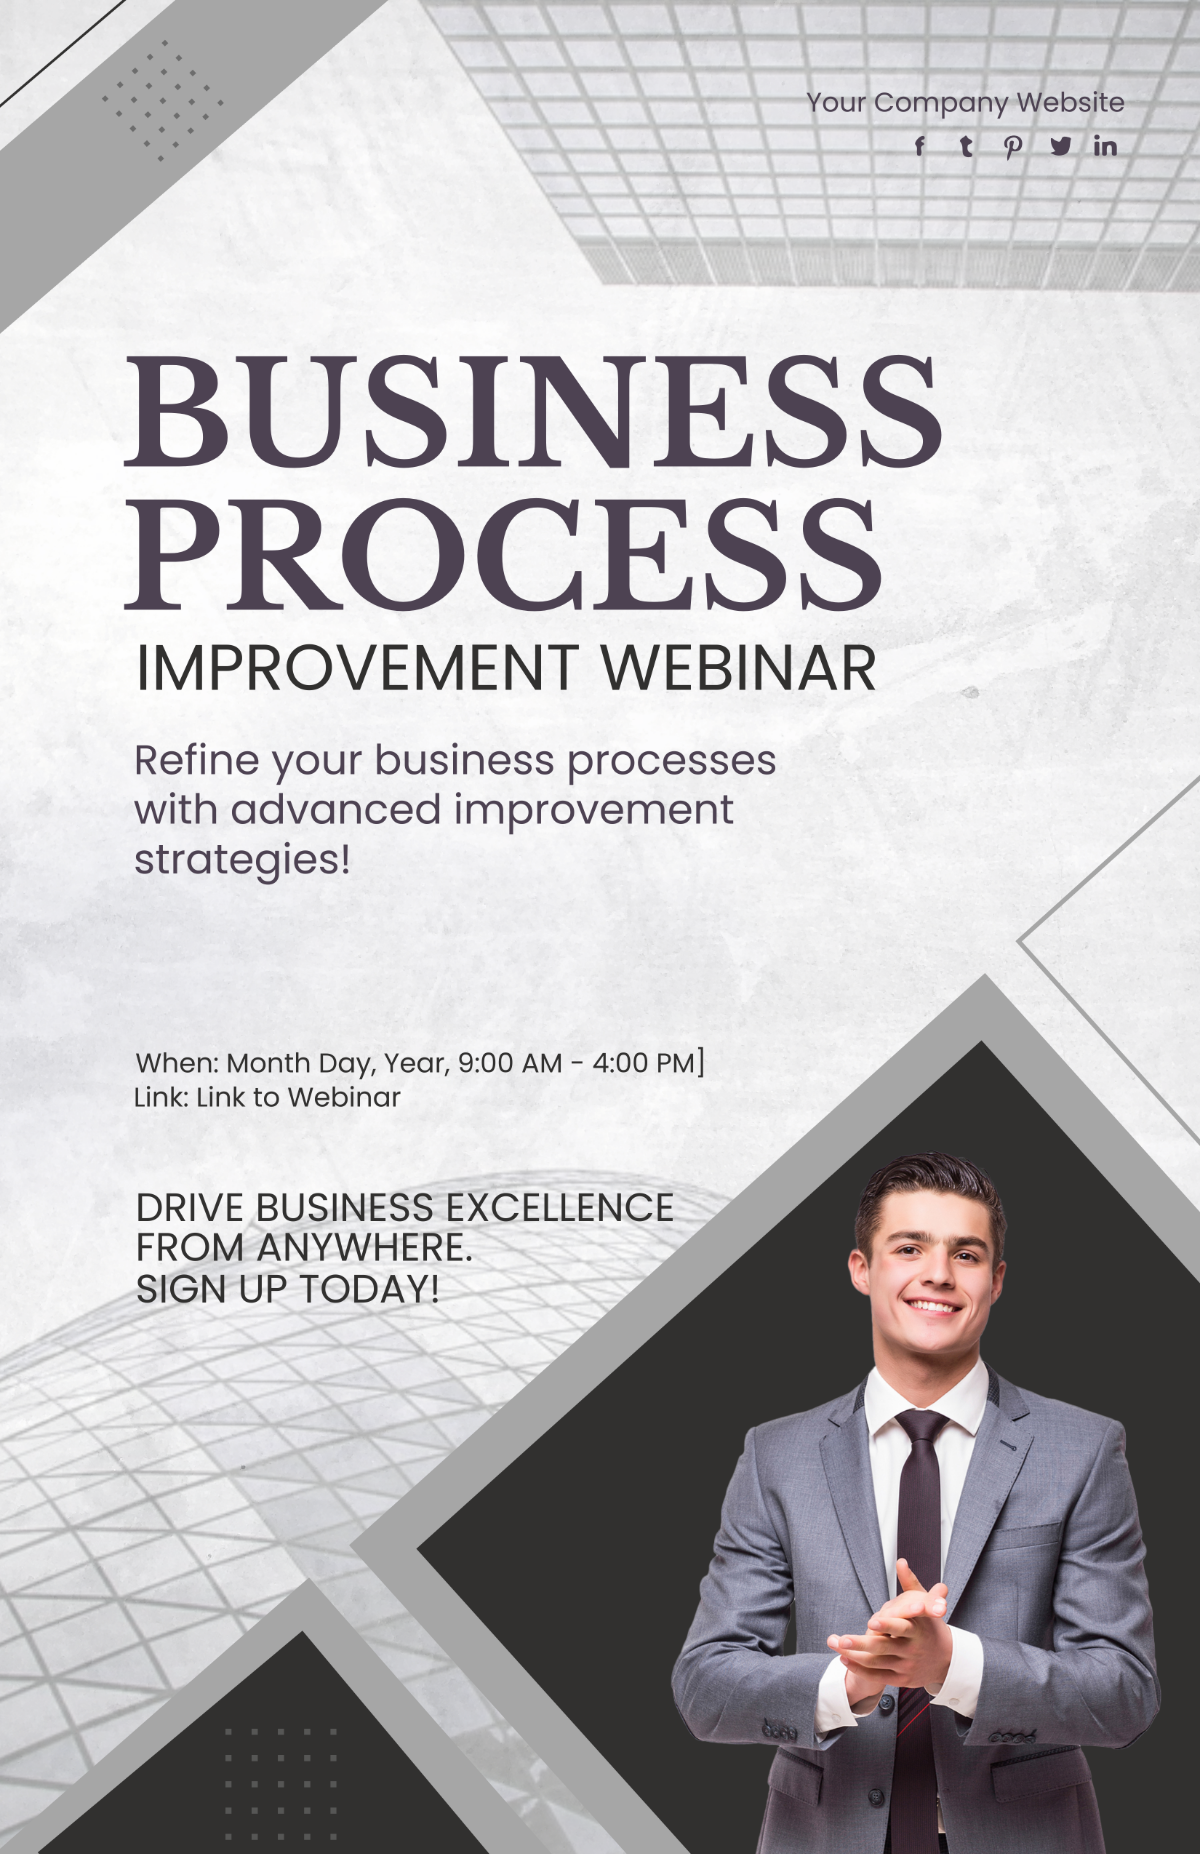 Business Process Improvement Webinar Poster Template